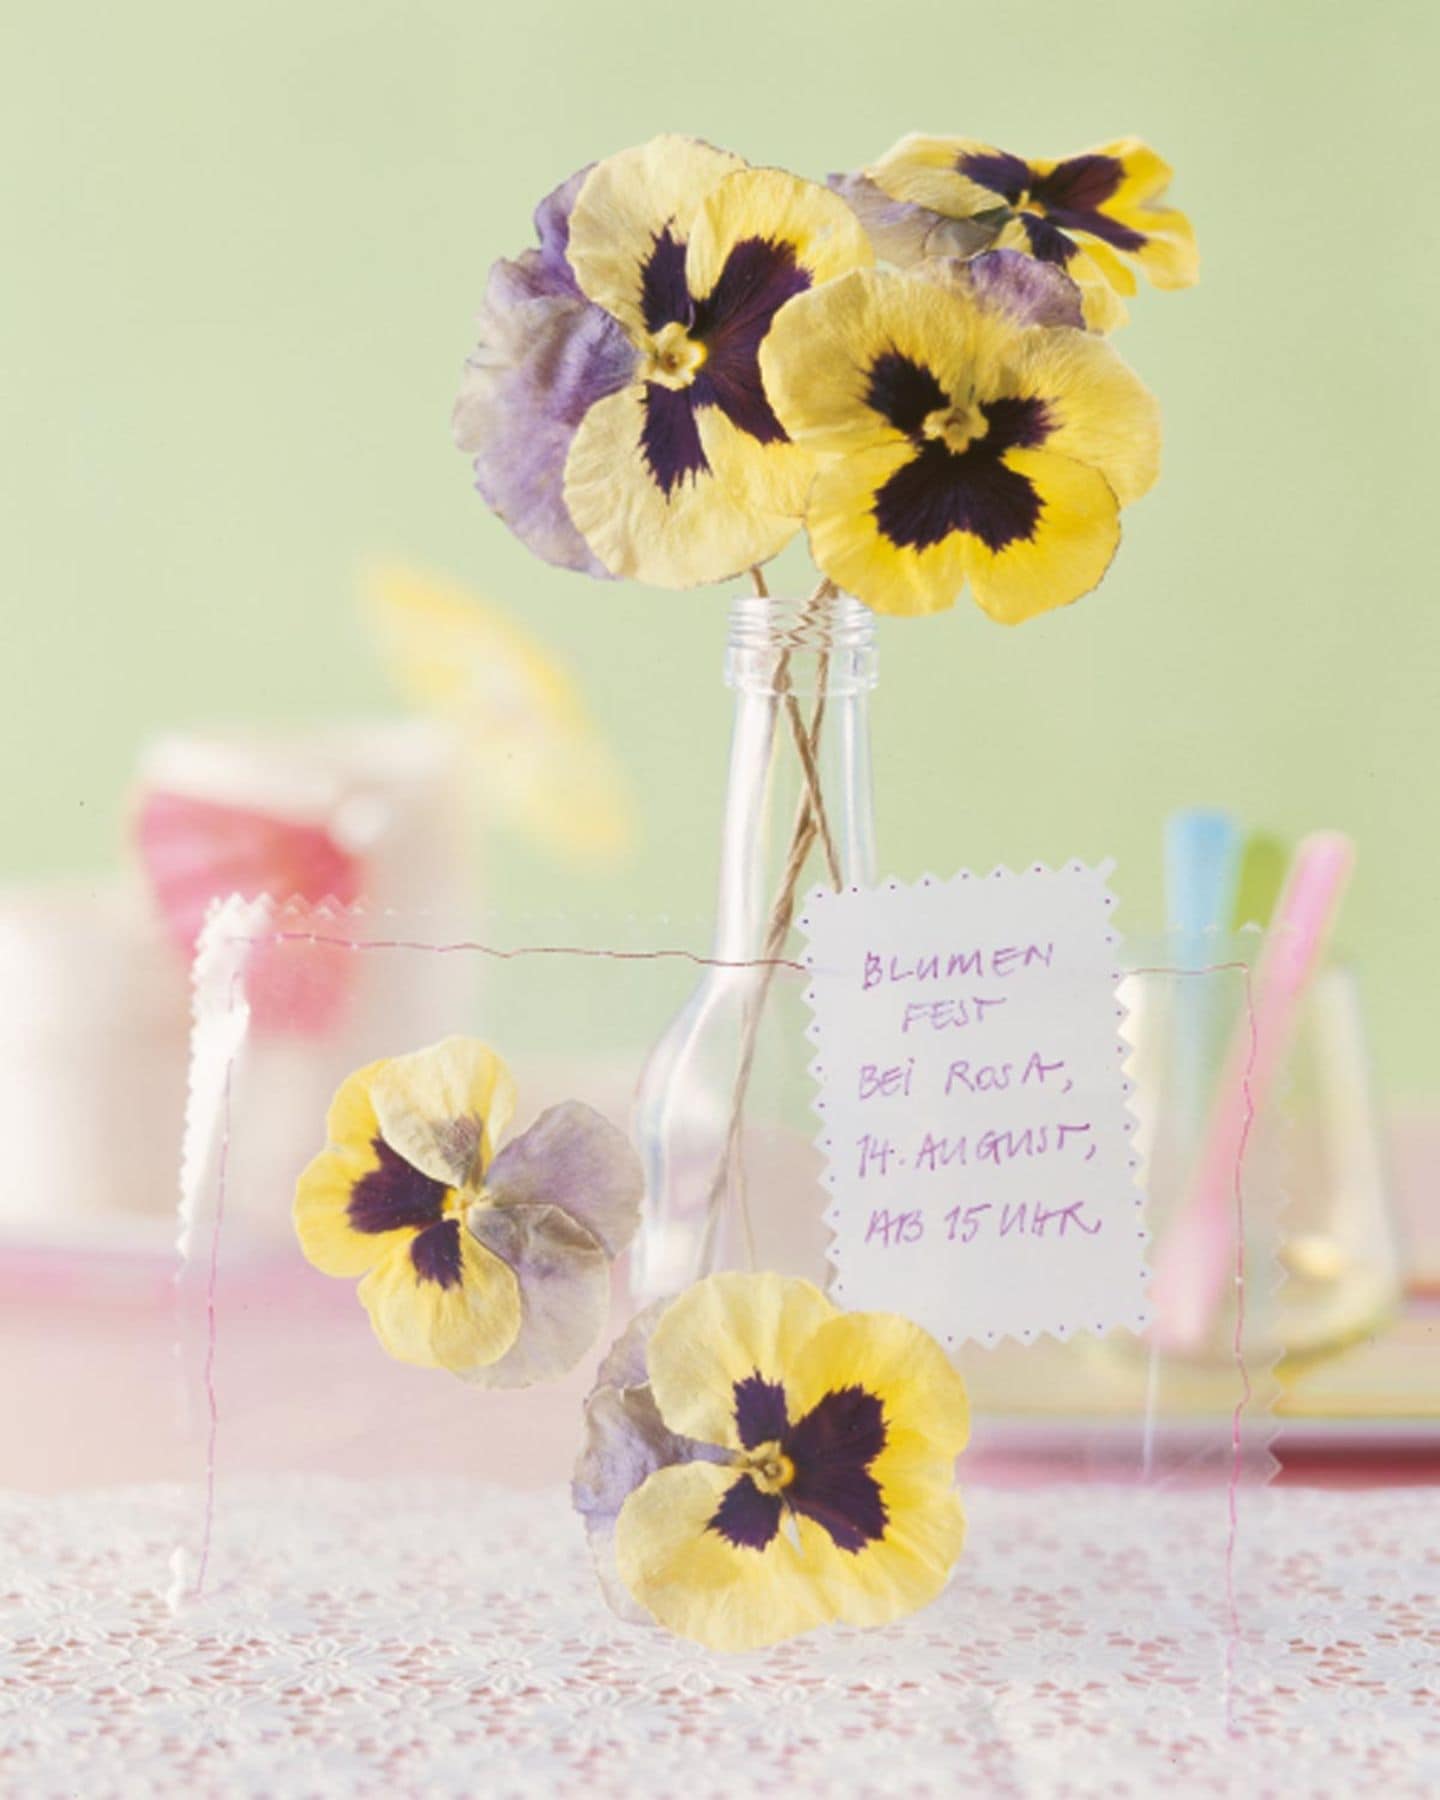 Frische Blumen in kleiner Vase als Einladung